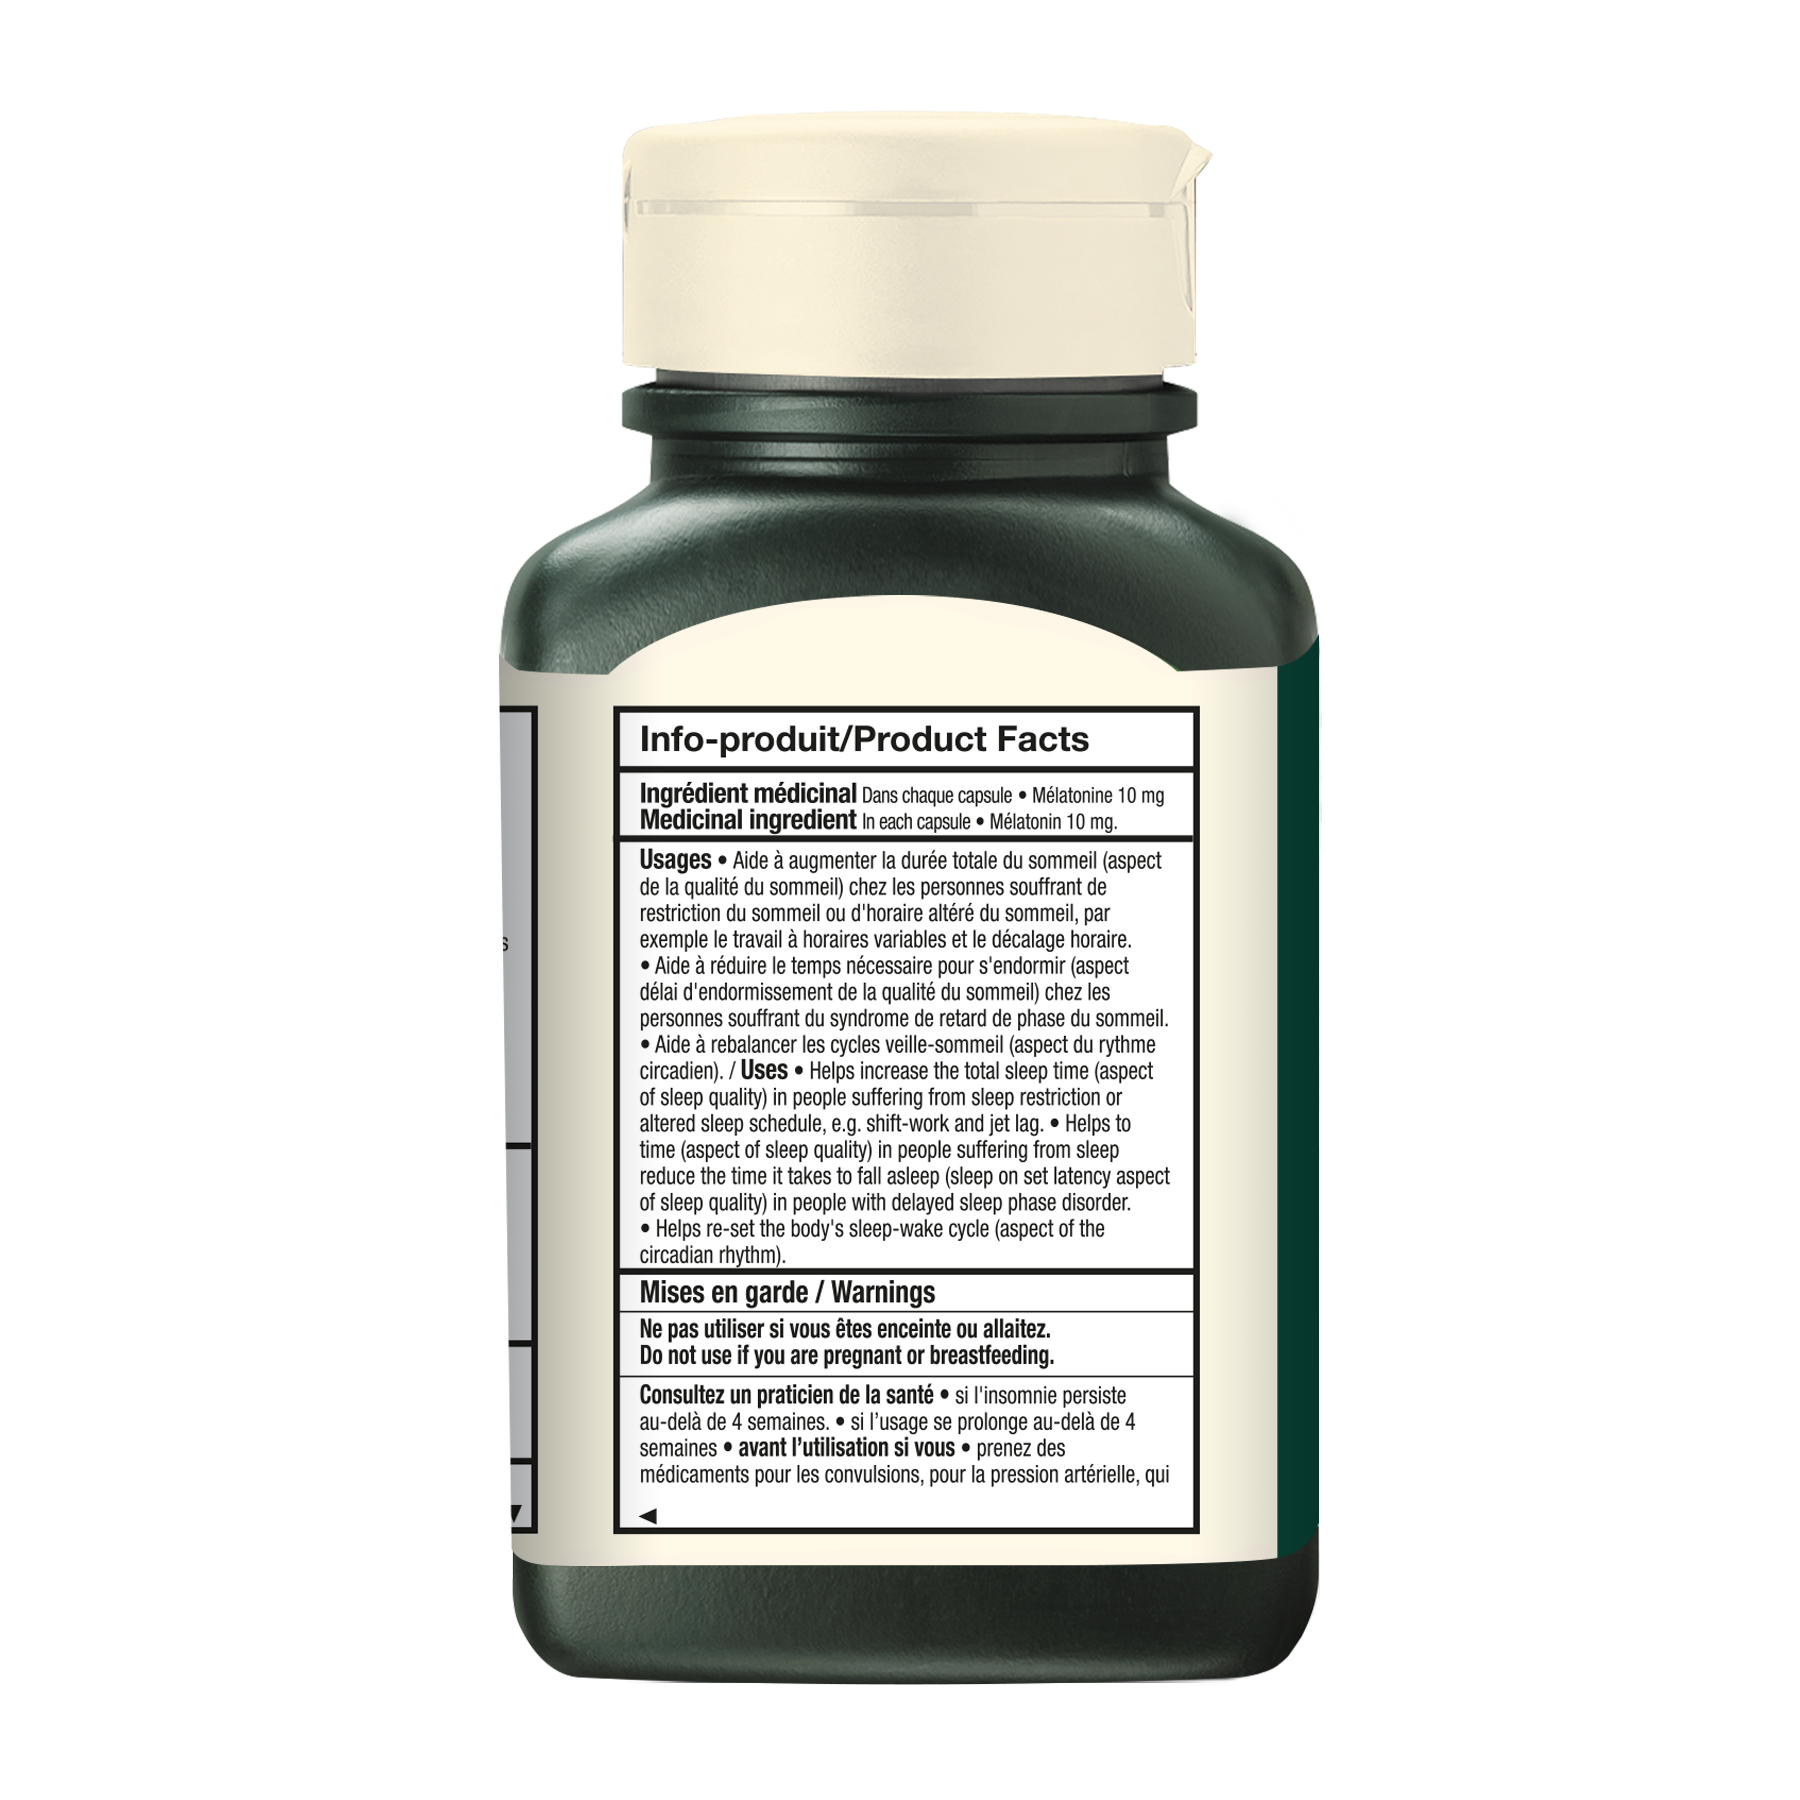 Mélatonine 10 mg Extra Fort - Format Valeur|| Melatonin 10 mg Extra-Strength - Value Pack